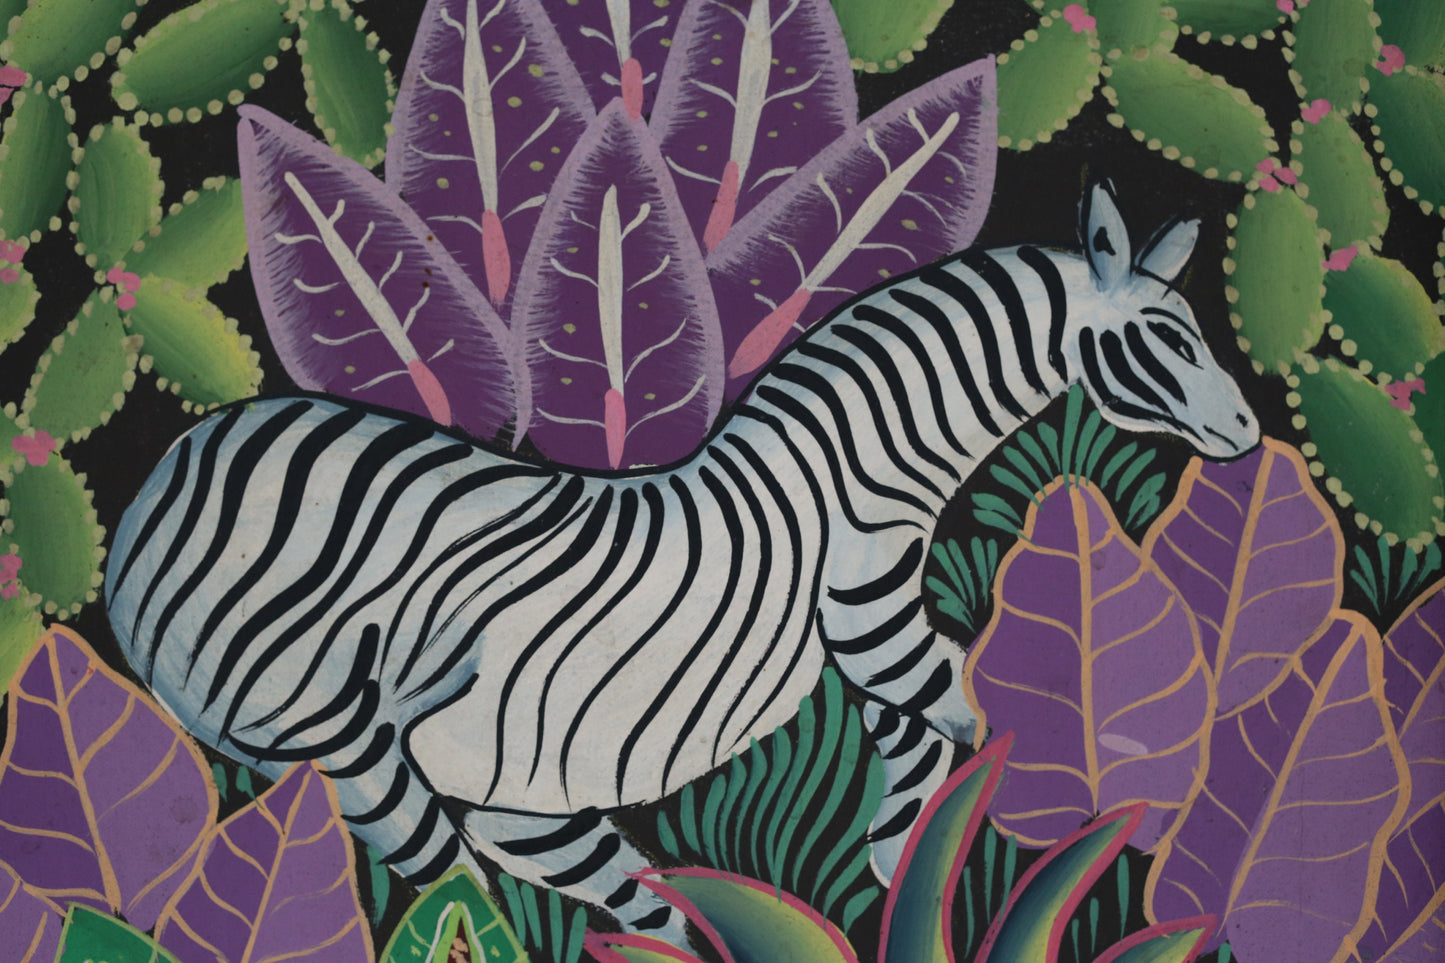 Oil Painting African Elephant Zebra Jungle Signed Framed Original